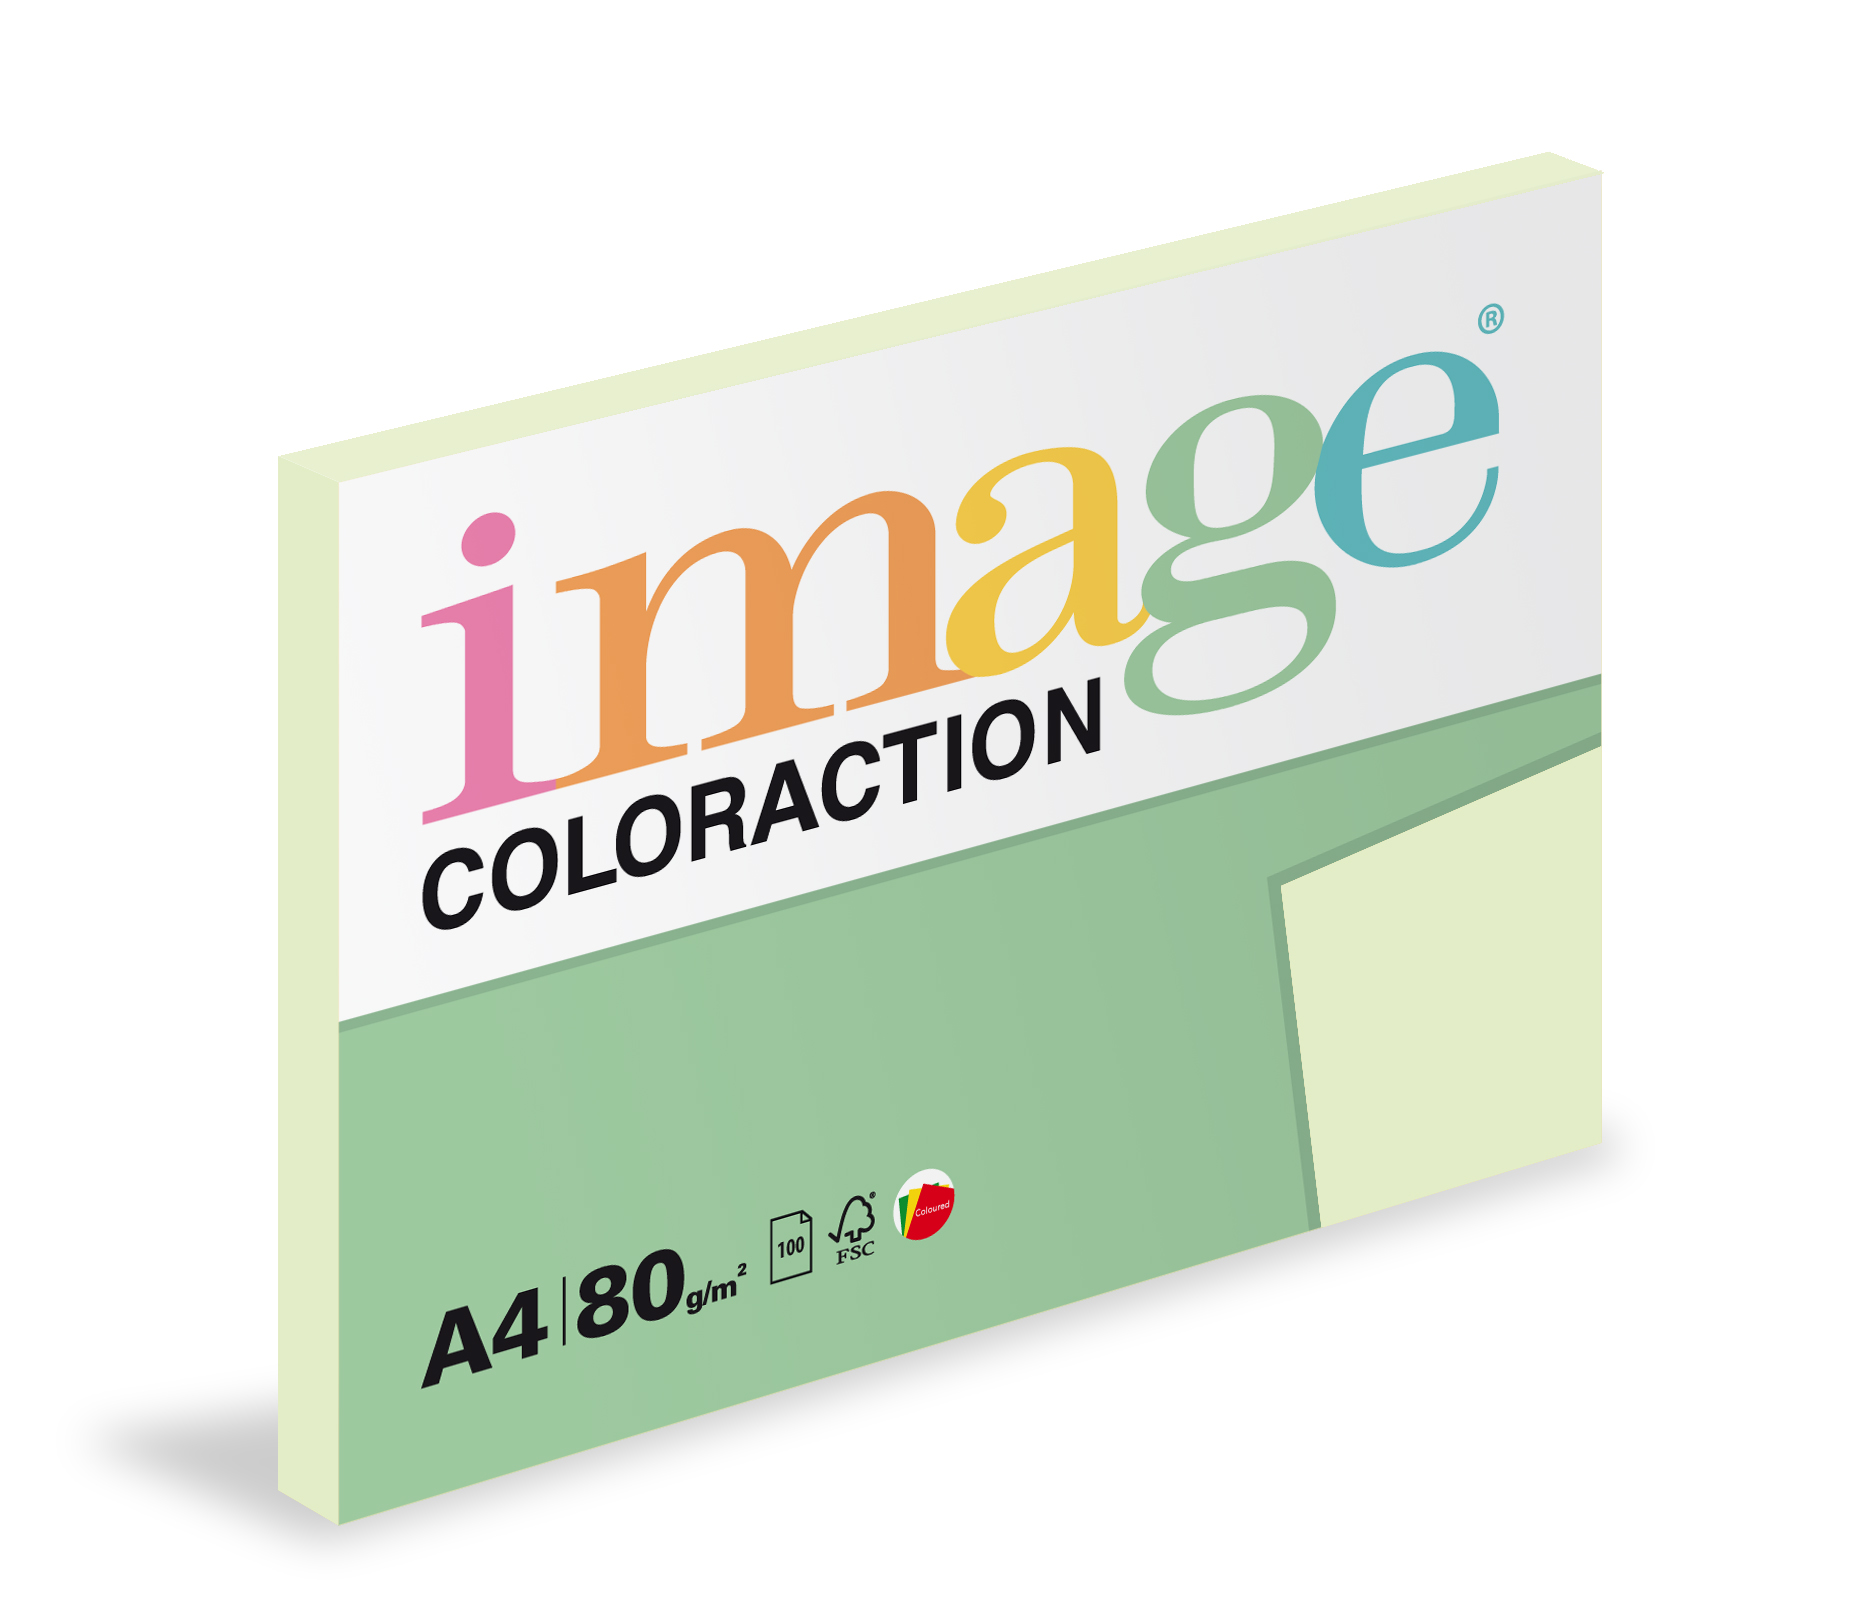 Papír kopírovací Coloraction A4 80g/ 100 listů zelená světlá pastelová